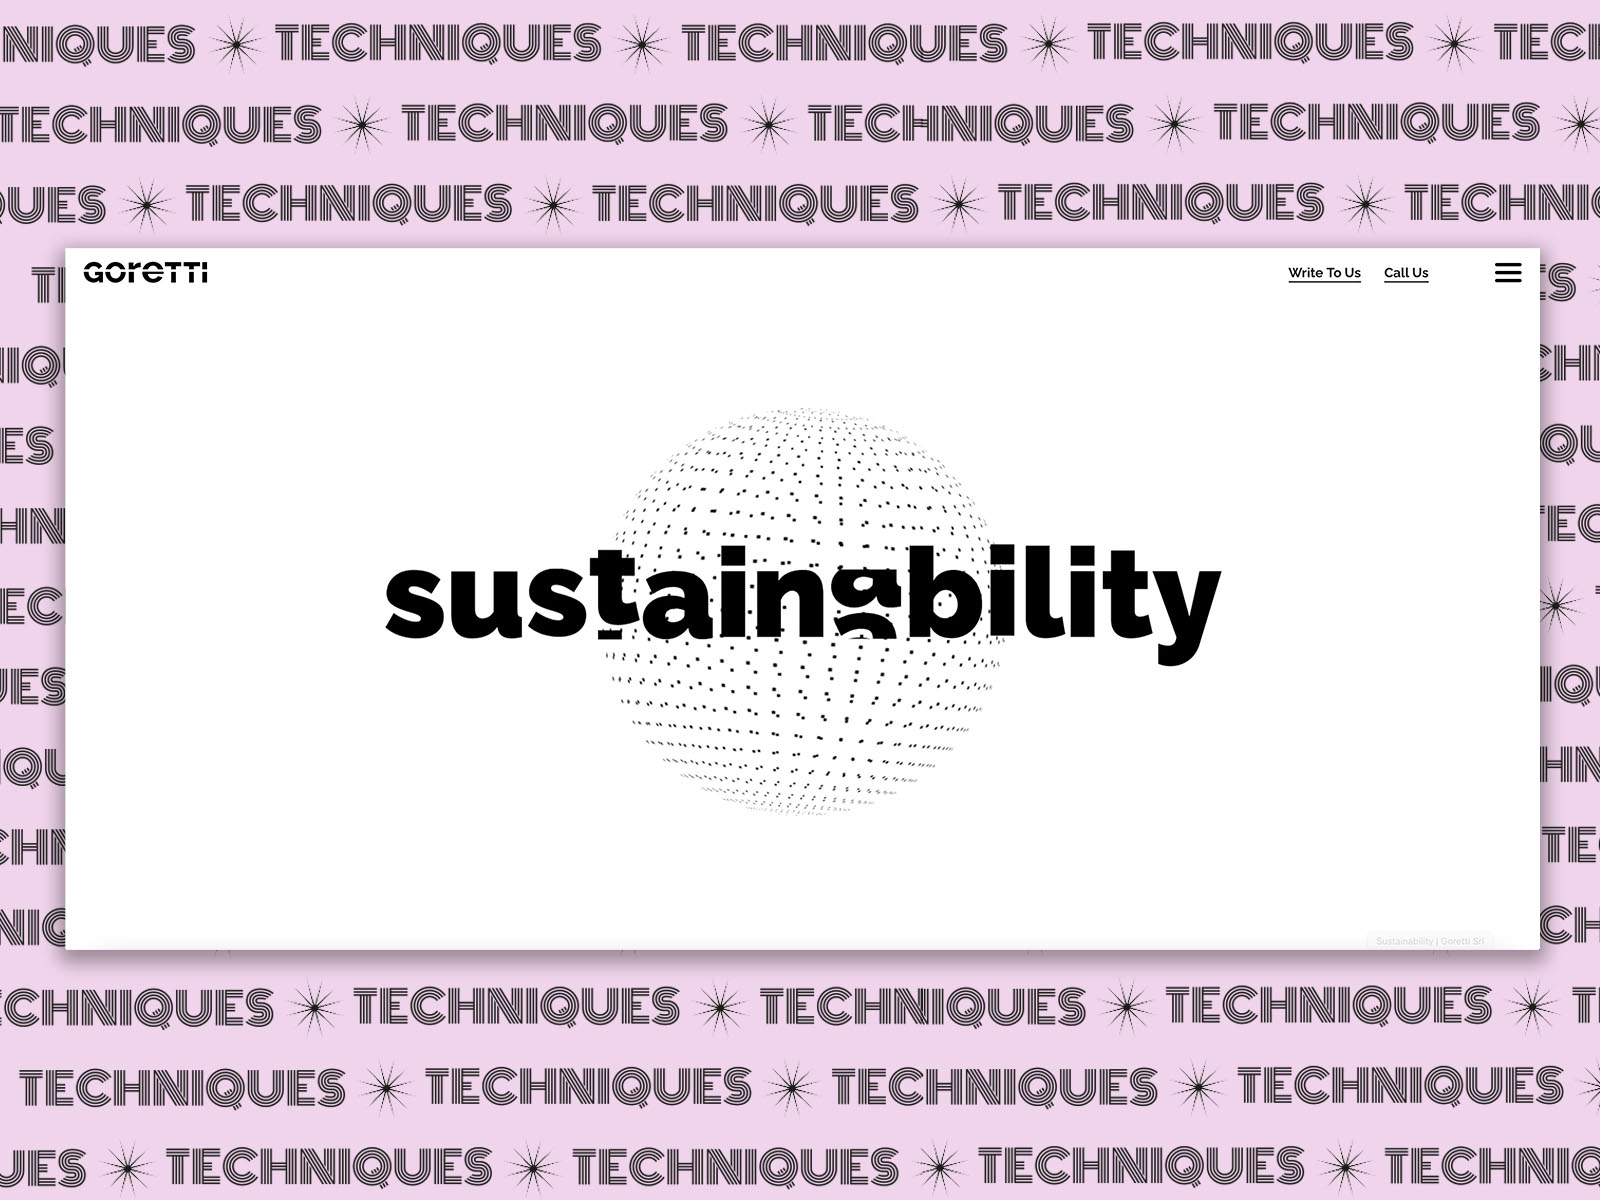 Sustainability animation